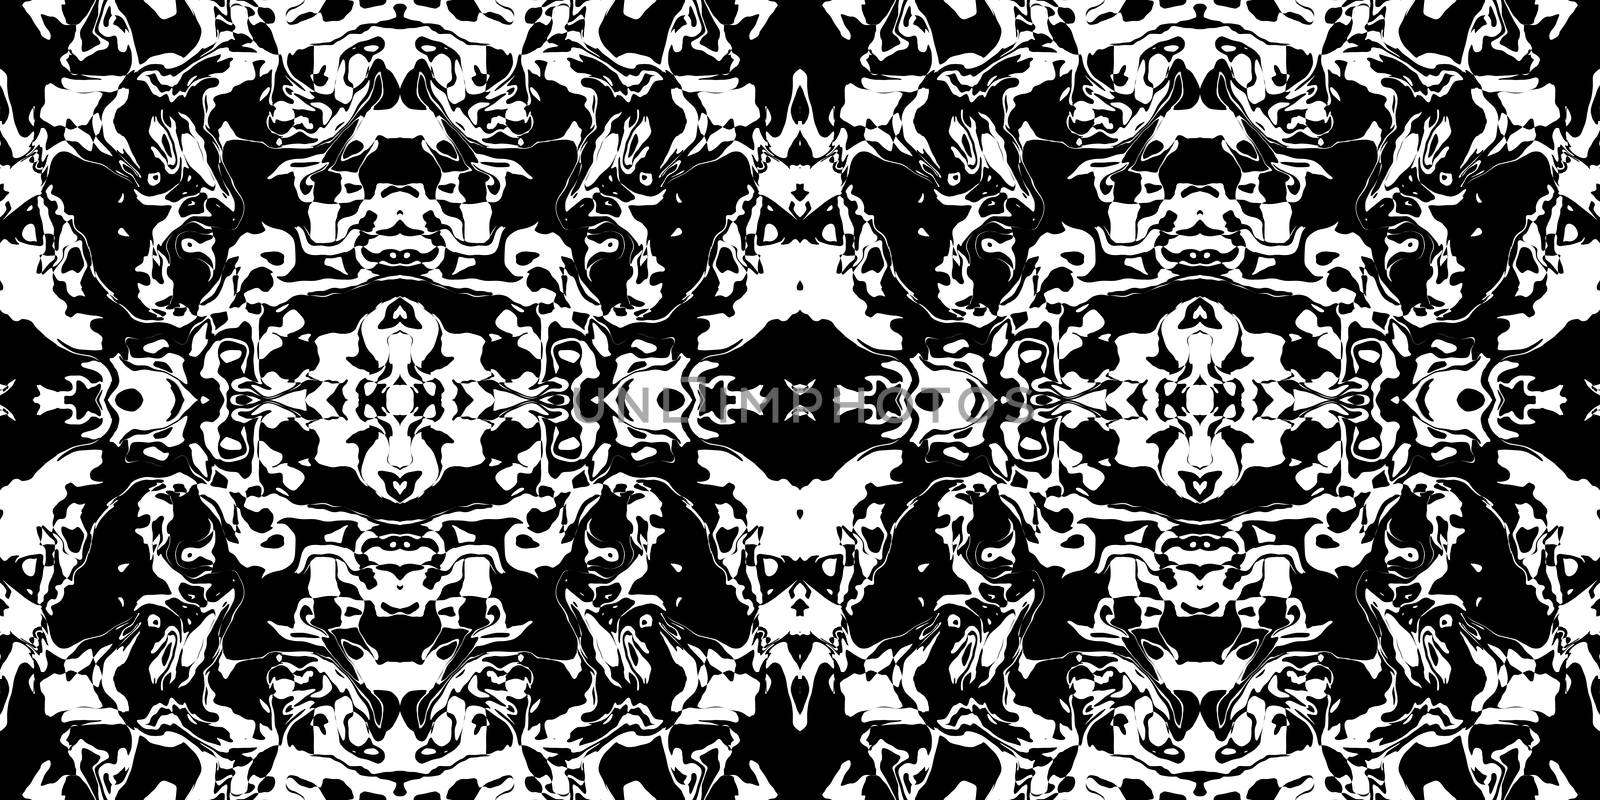 Dark Rorschach Test Ink Blot Texture. Seamless Monochrome Darkness Pattern Background.